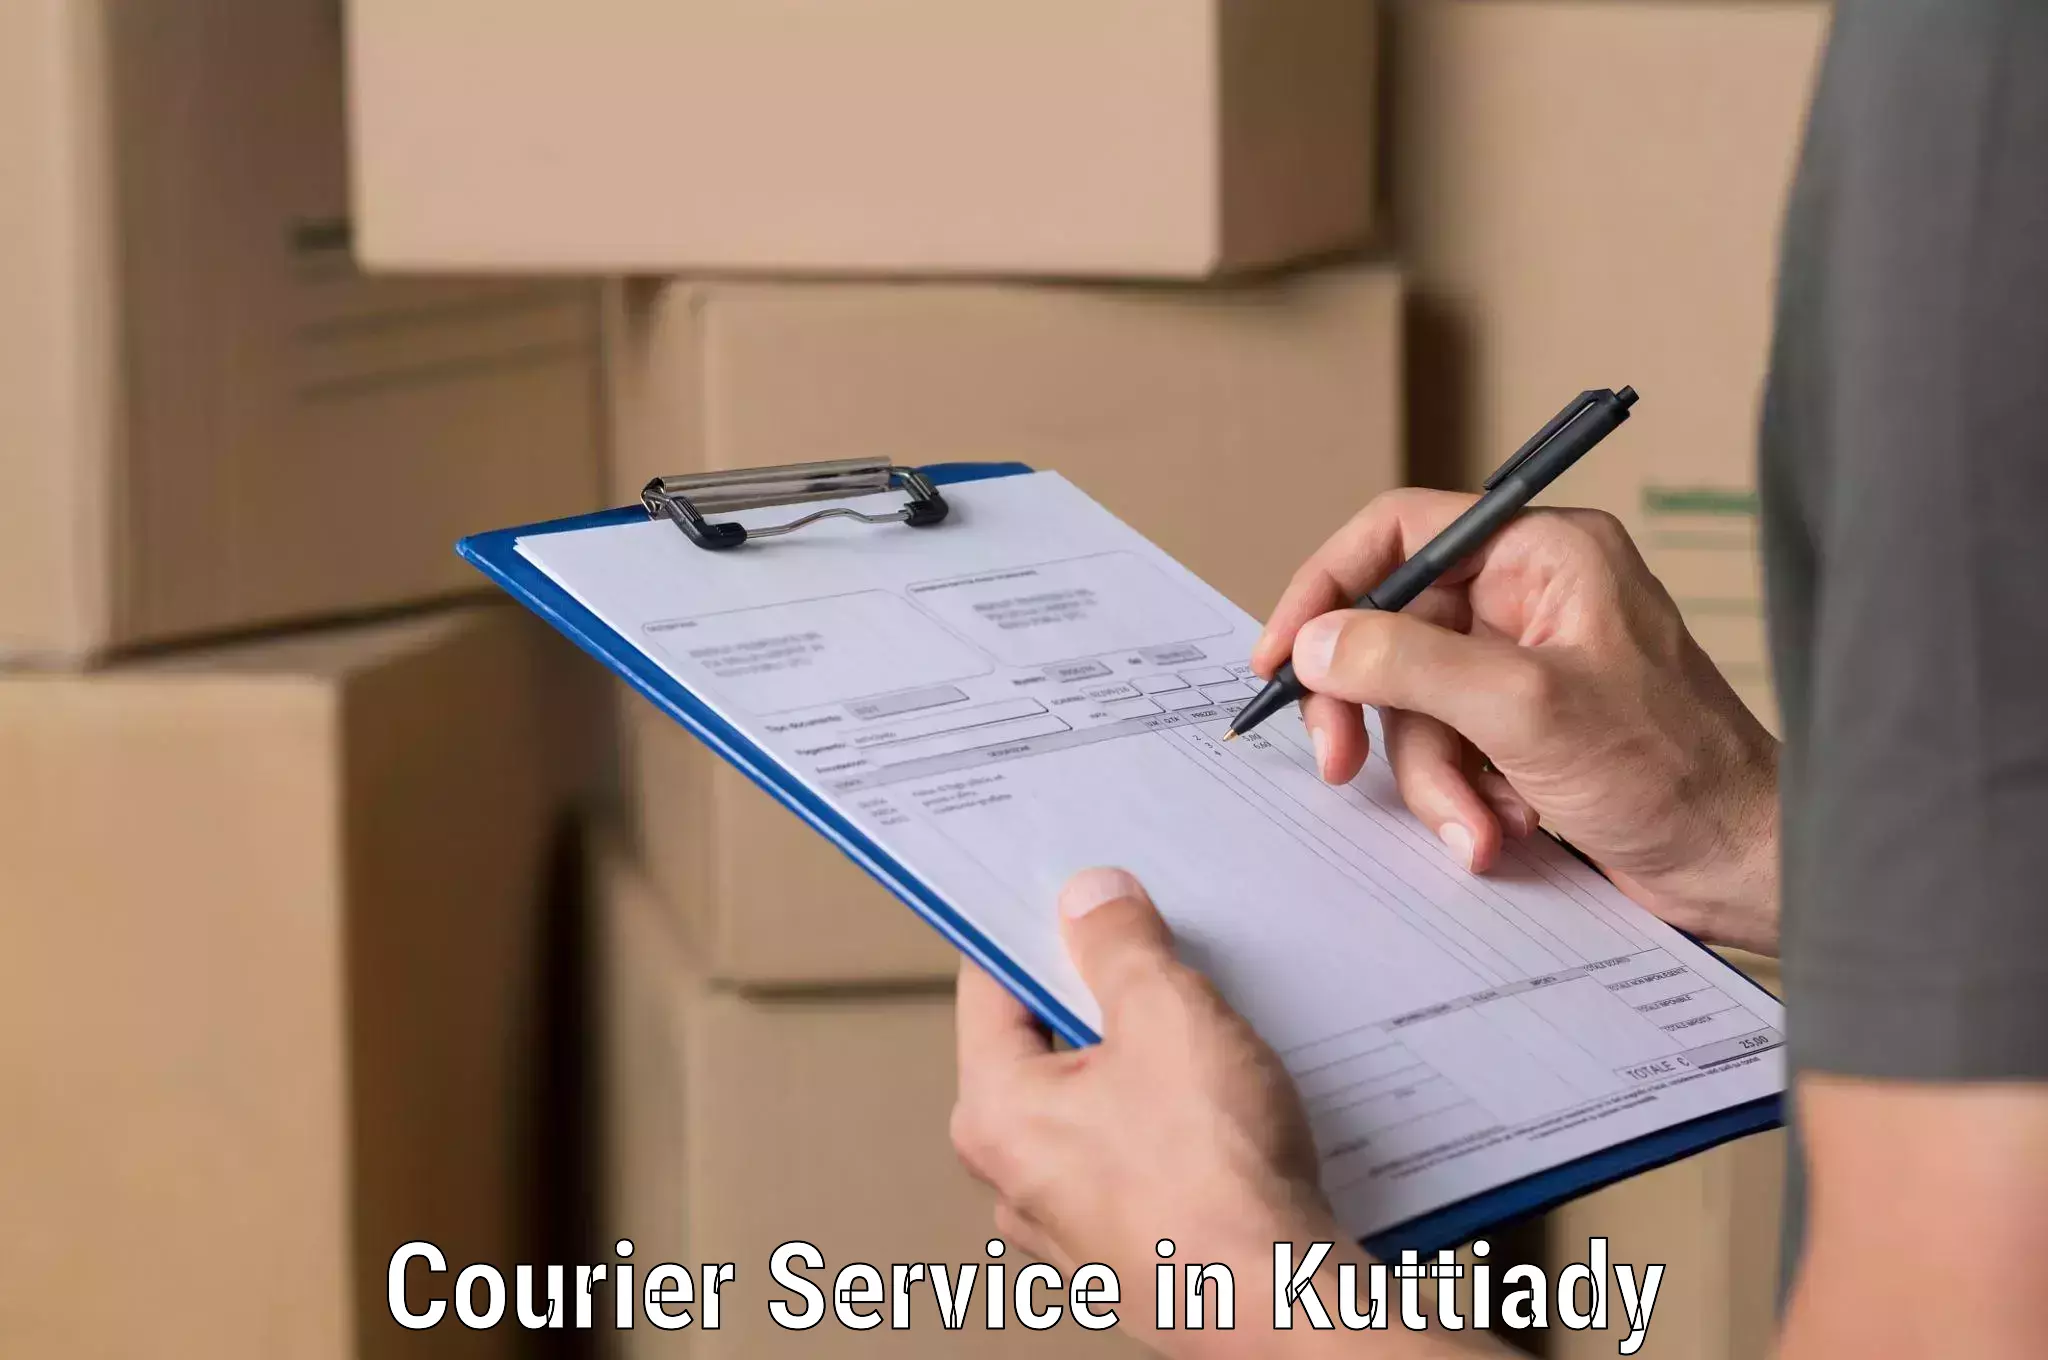 Customer-centric shipping in Kuttiady